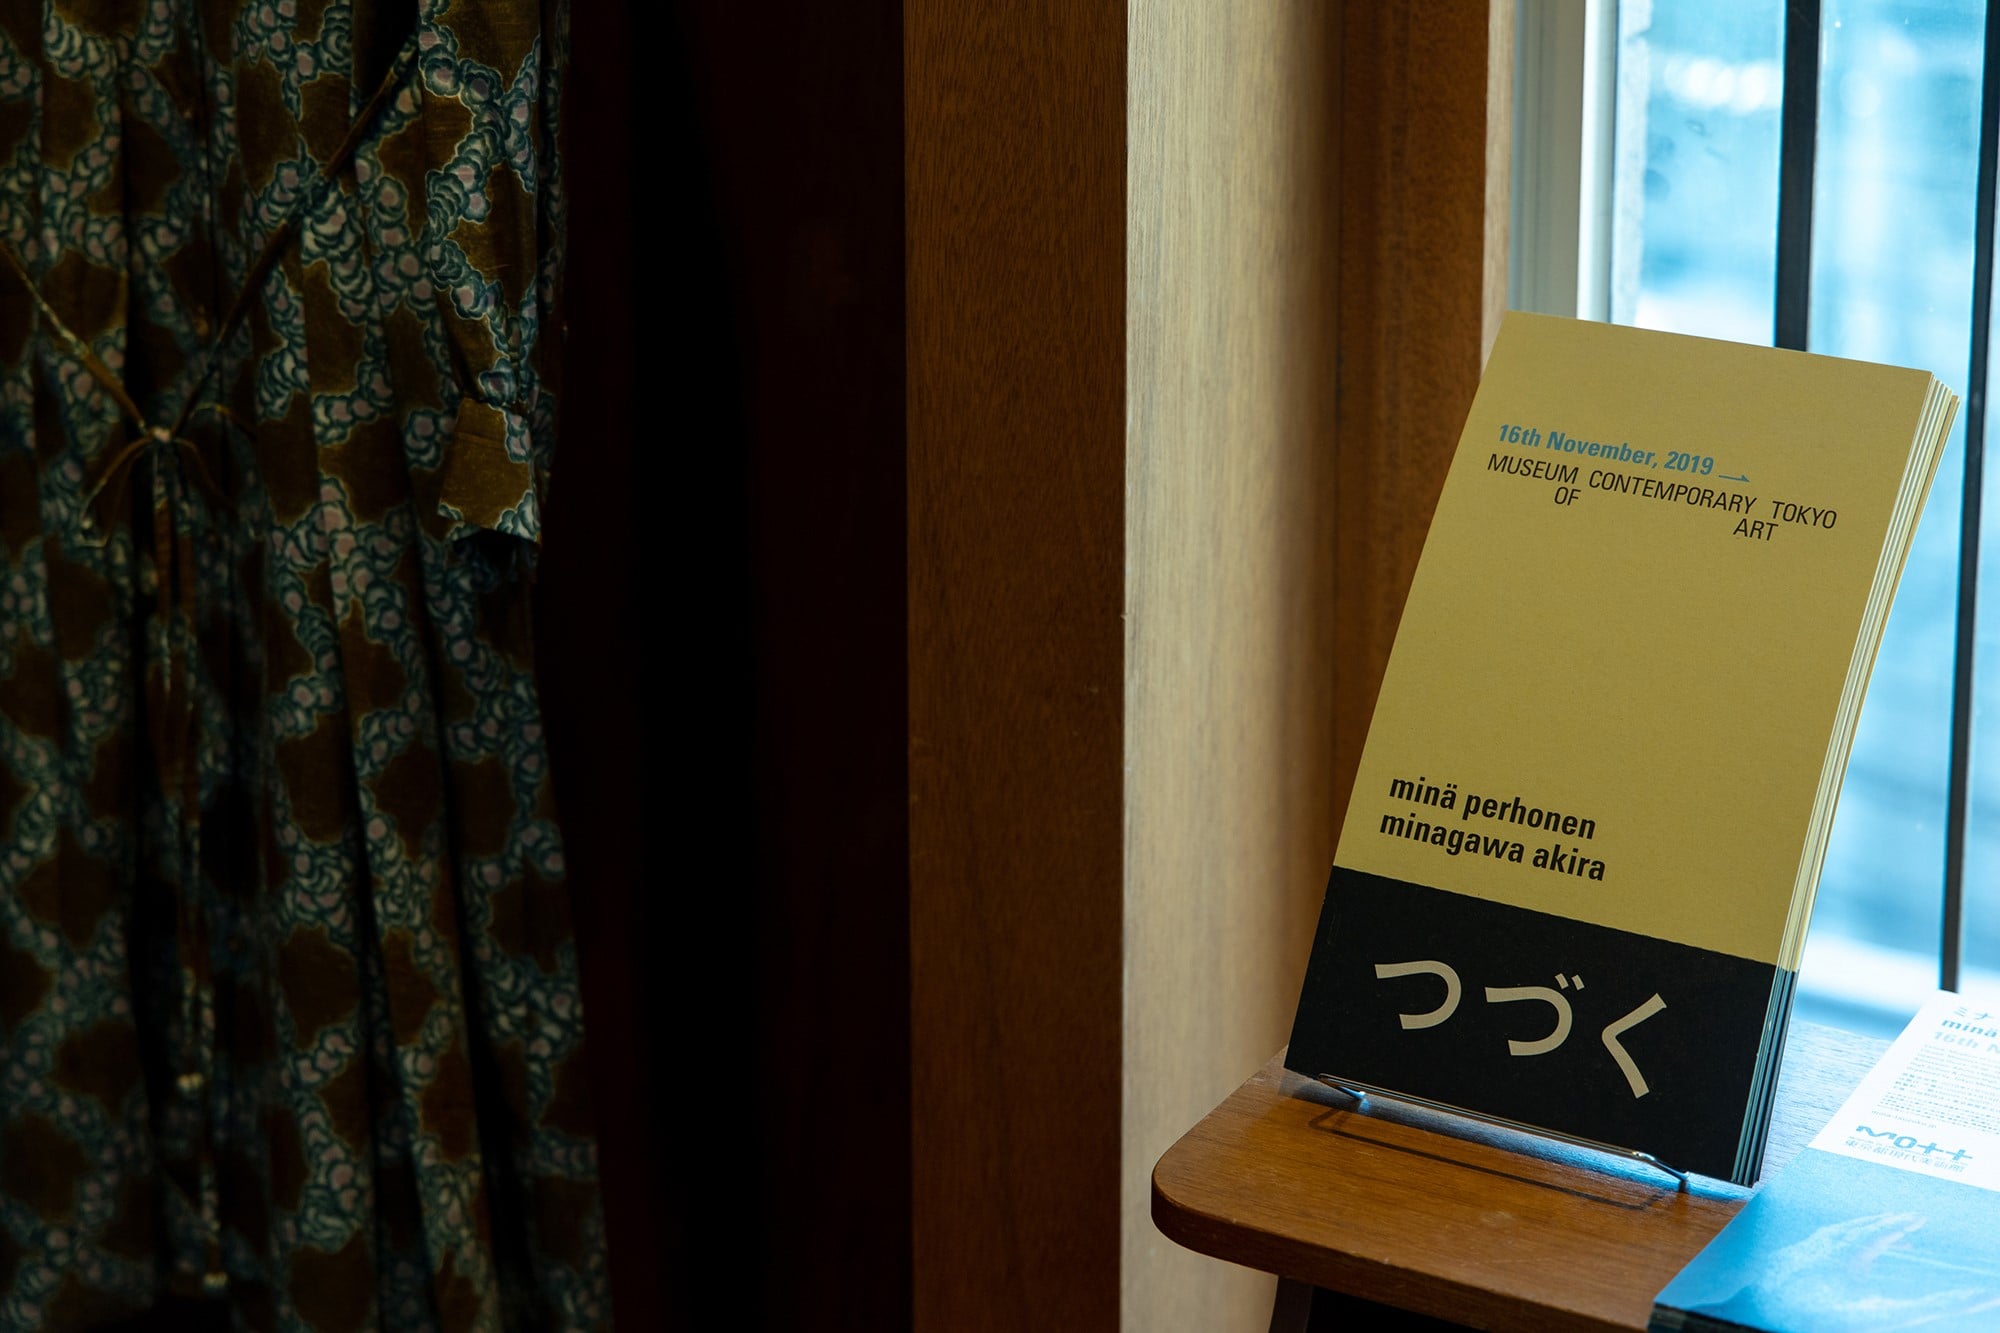 11月16日から東京都現代美術館で開催される「つづく」展のチラシは、葛西薫がデザイン。葛西のアイデアで、タイトル部分が栞になるというユニークなものとなった。細部に至るまで、遊び心を加味している。